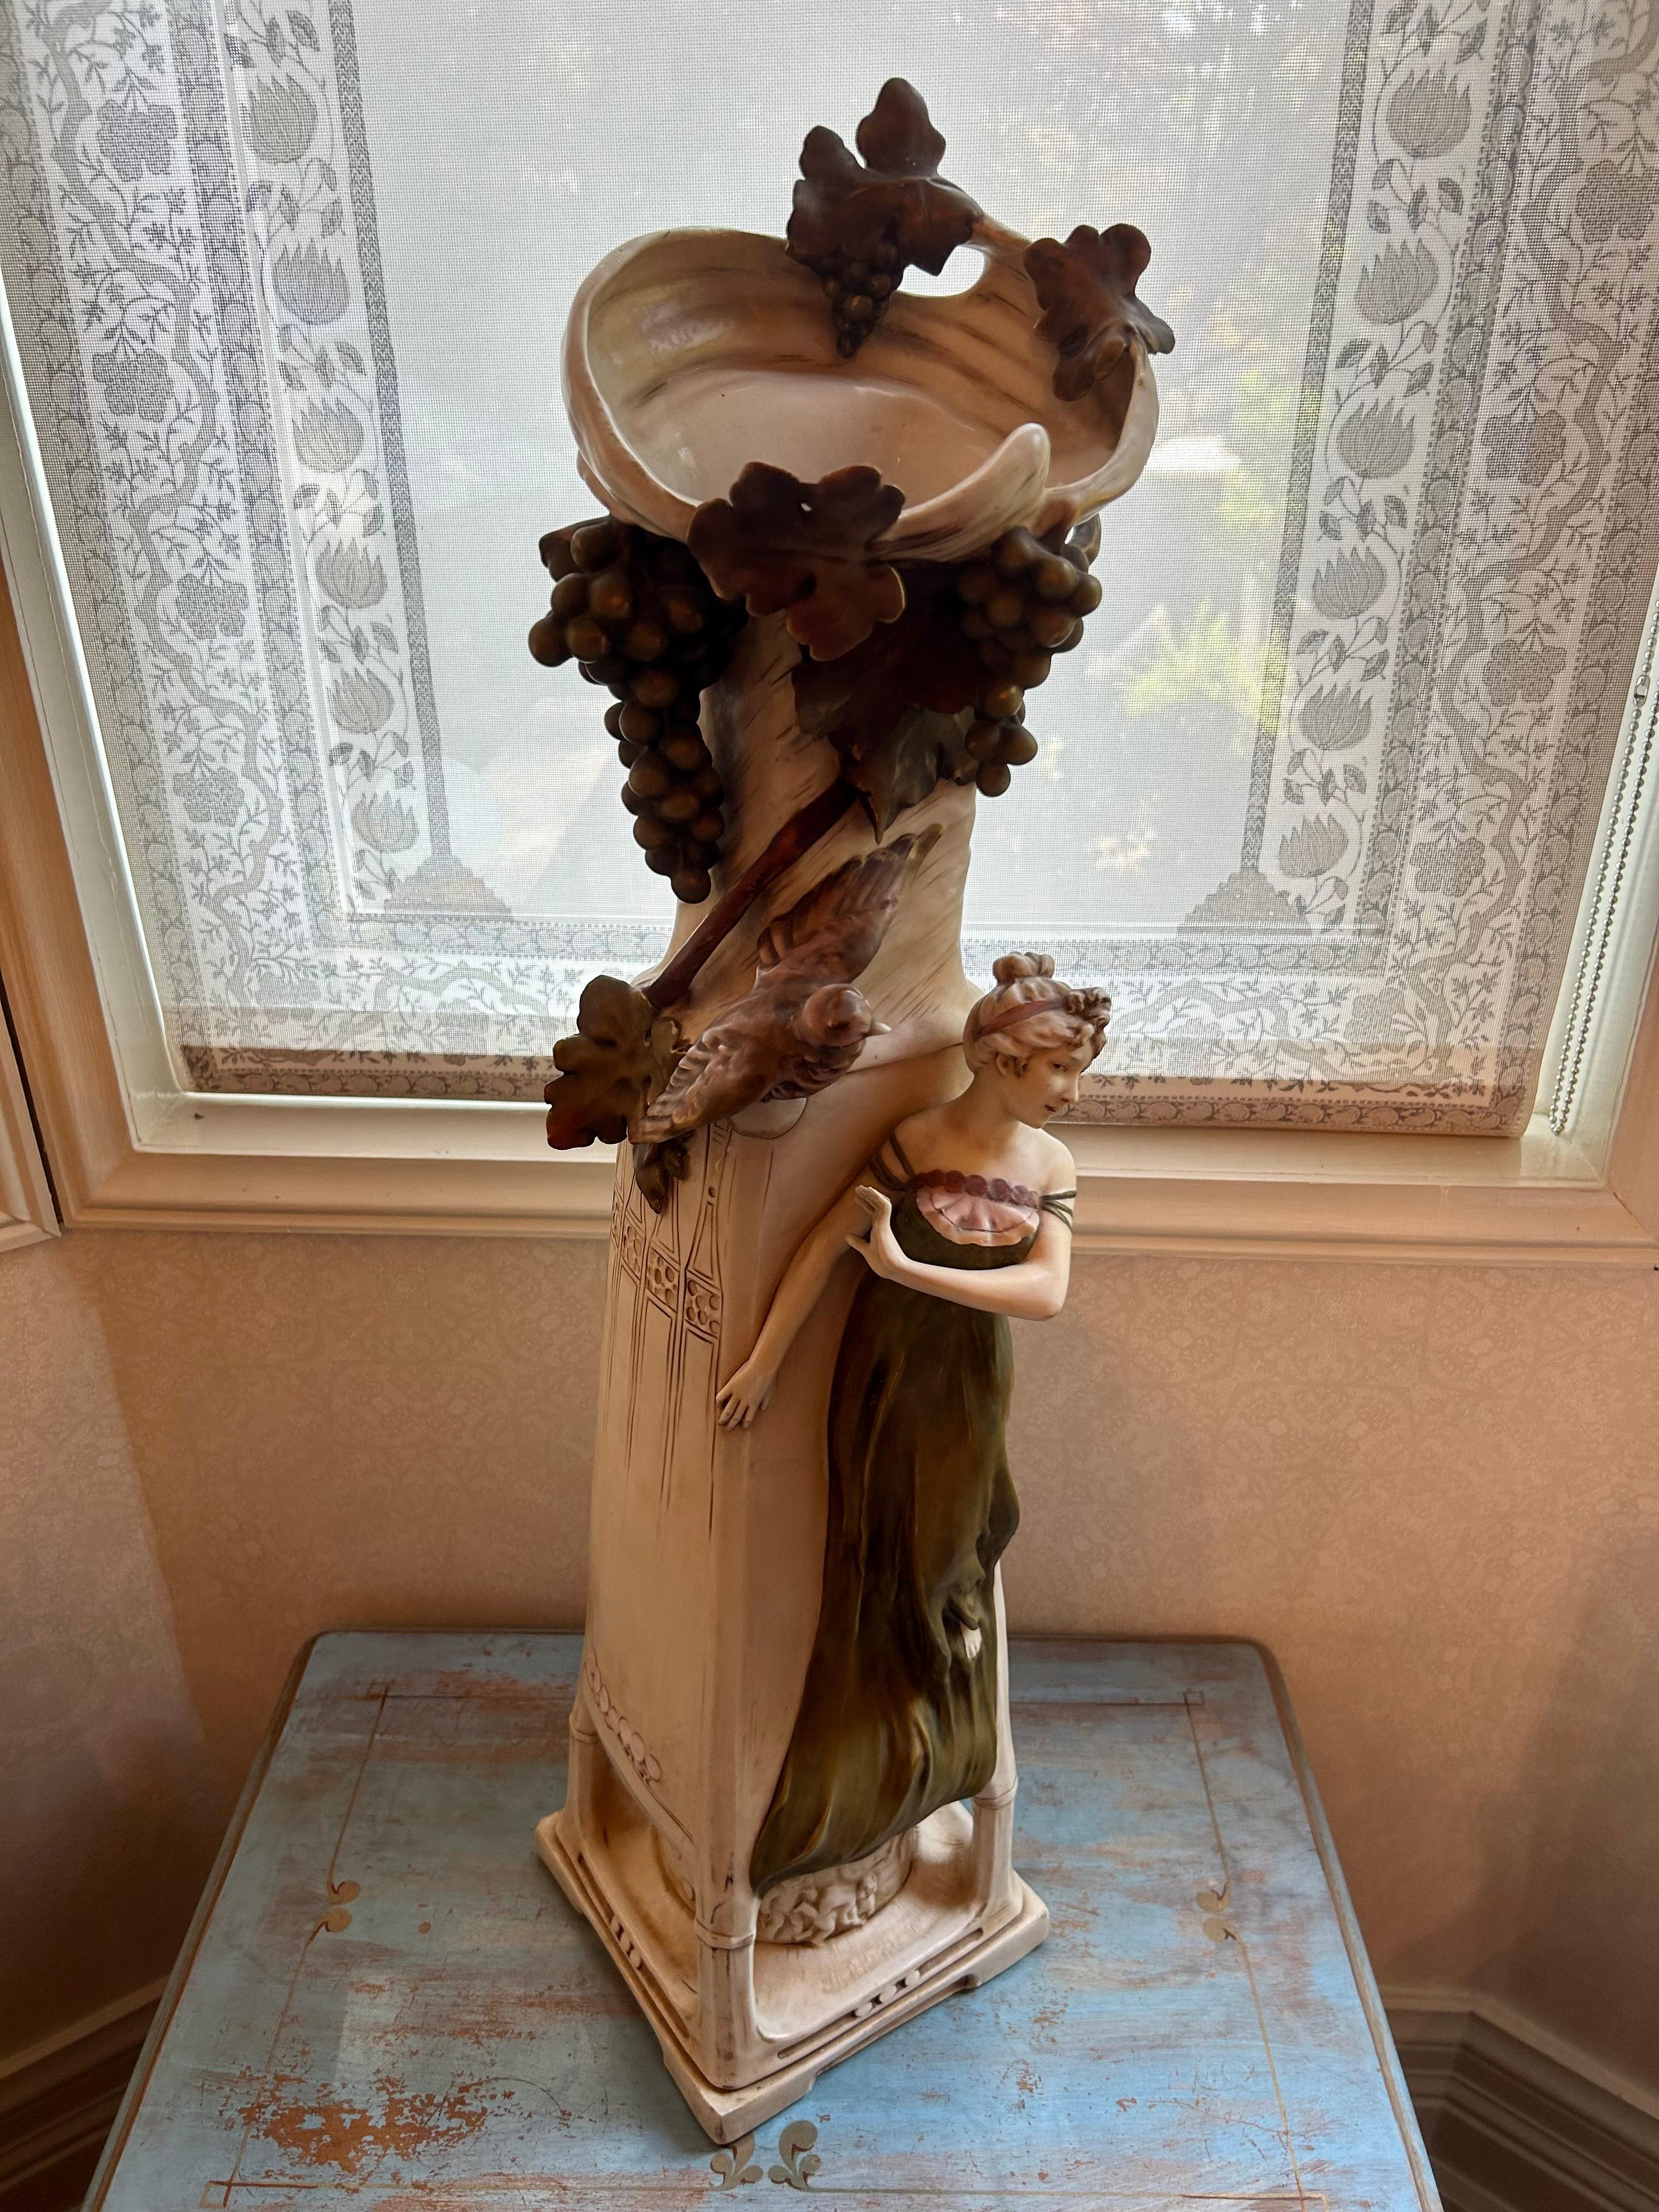 Vase monumental en porcelaine Royal Dux Bohemia, représentant une belle jeune fille debout sous une vigne, avec un grand oiseau. La base du vase est ornée de putti qui s'ébattent. Motifs typiques de l'Art nouveau, lignes stylisées incisées et fleurs